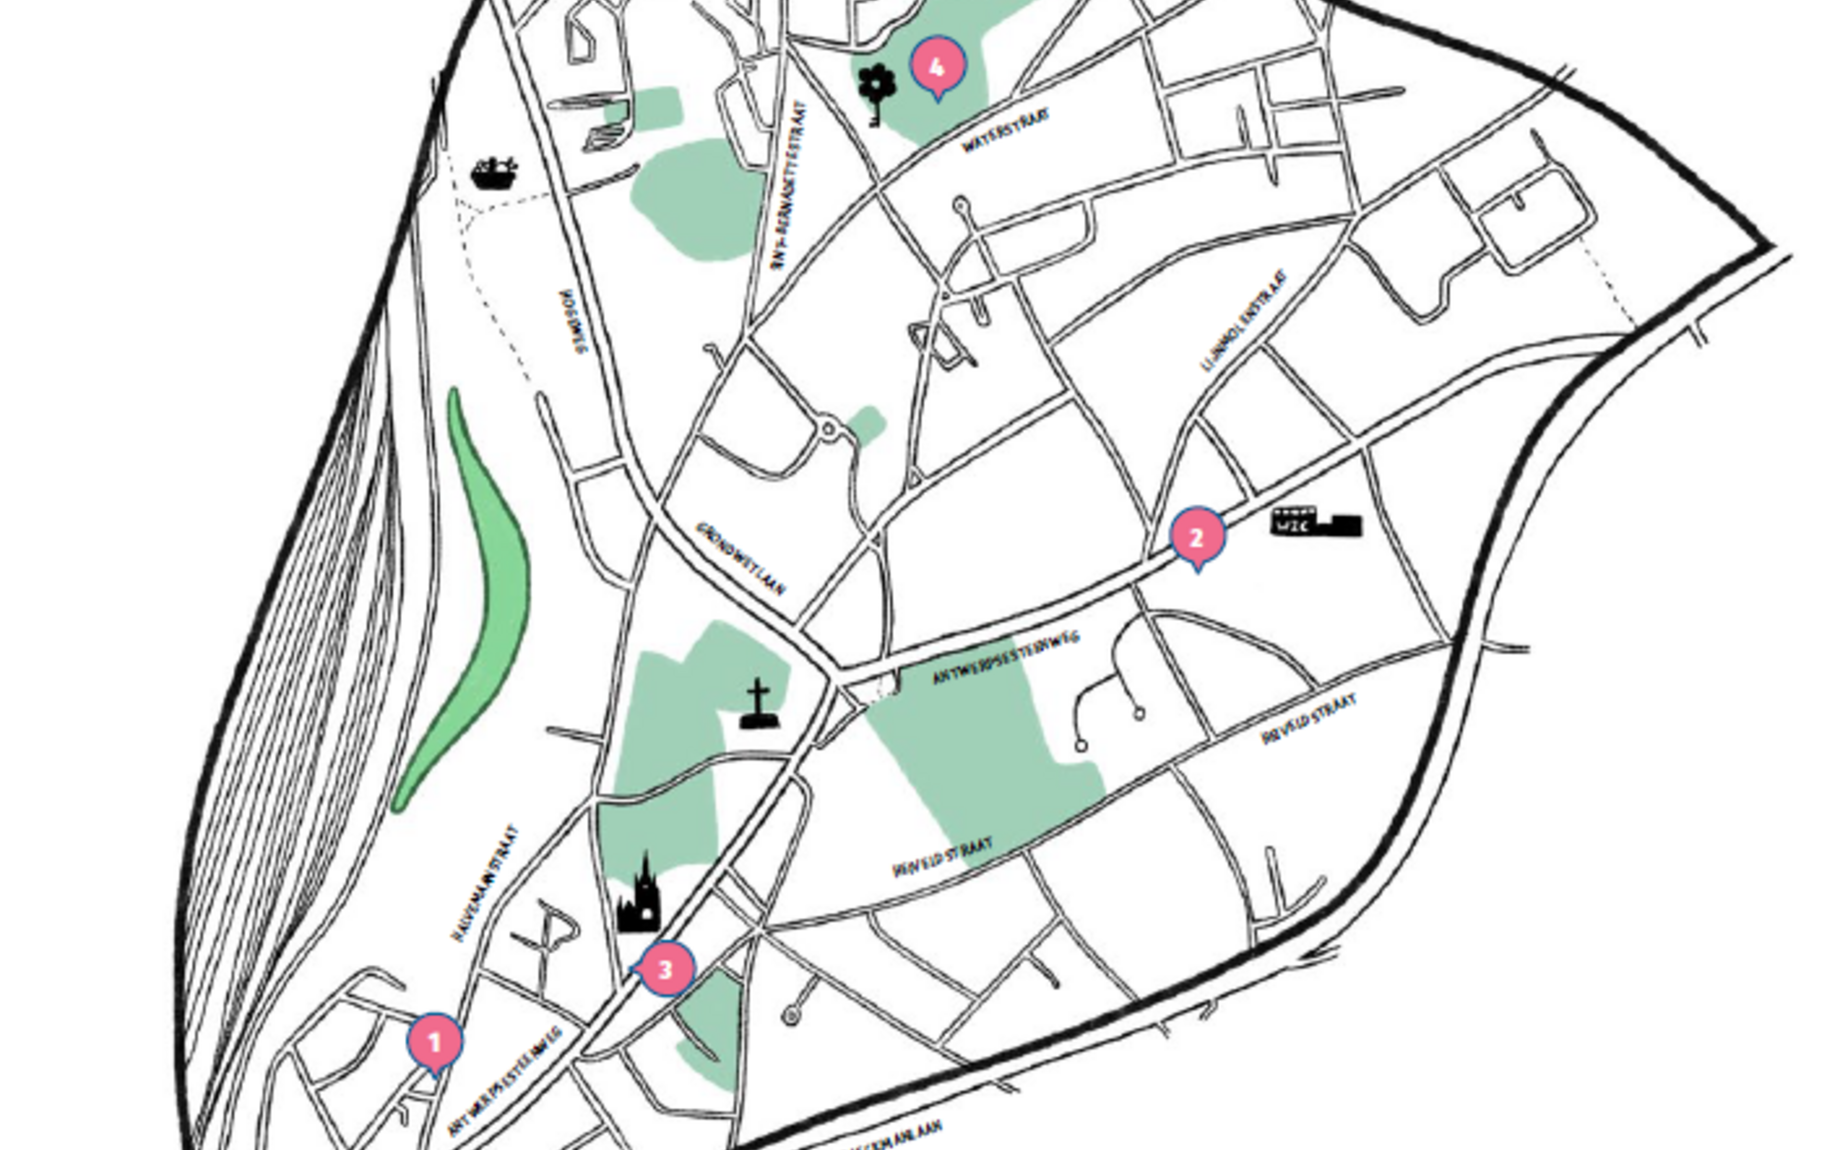 wijkmobiliteitsplan Sint-Amandsberg kaartje met locaties infoborden